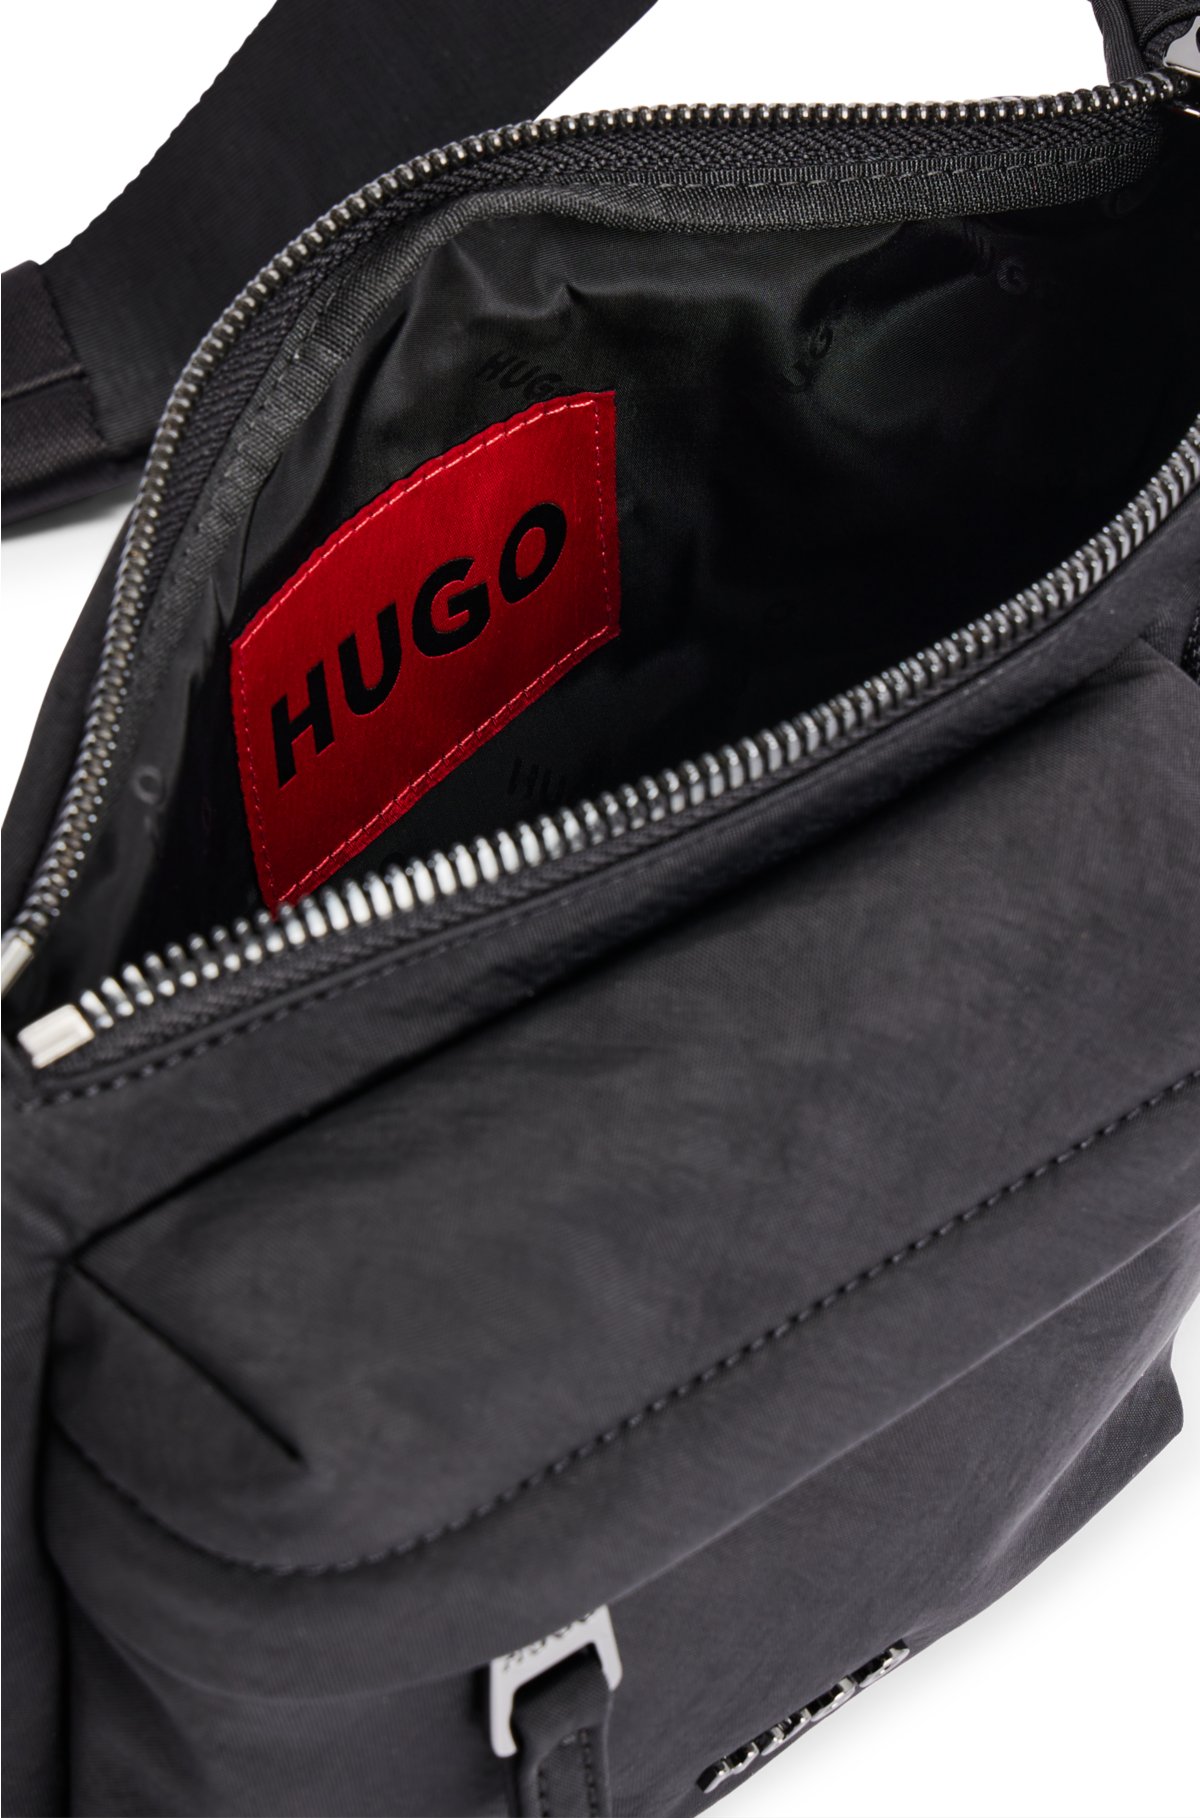 Belt bag with branded adjustable strap and full lining, Black